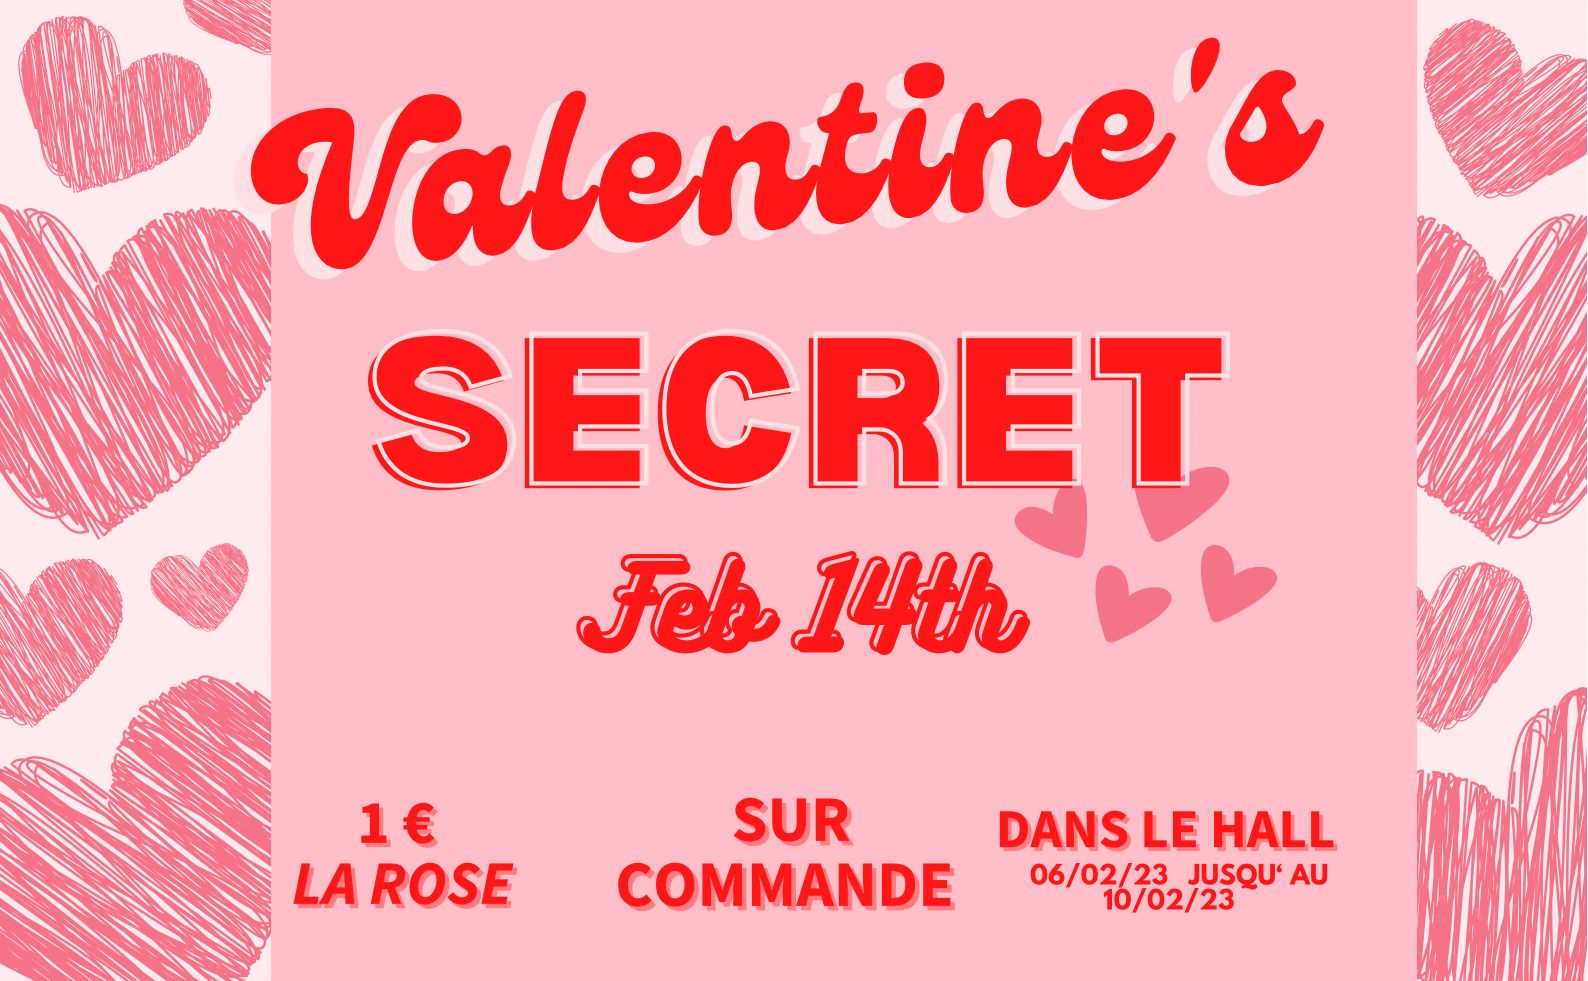 You are currently viewing Valentine’s secret : offrez une rose à votre valentin.e